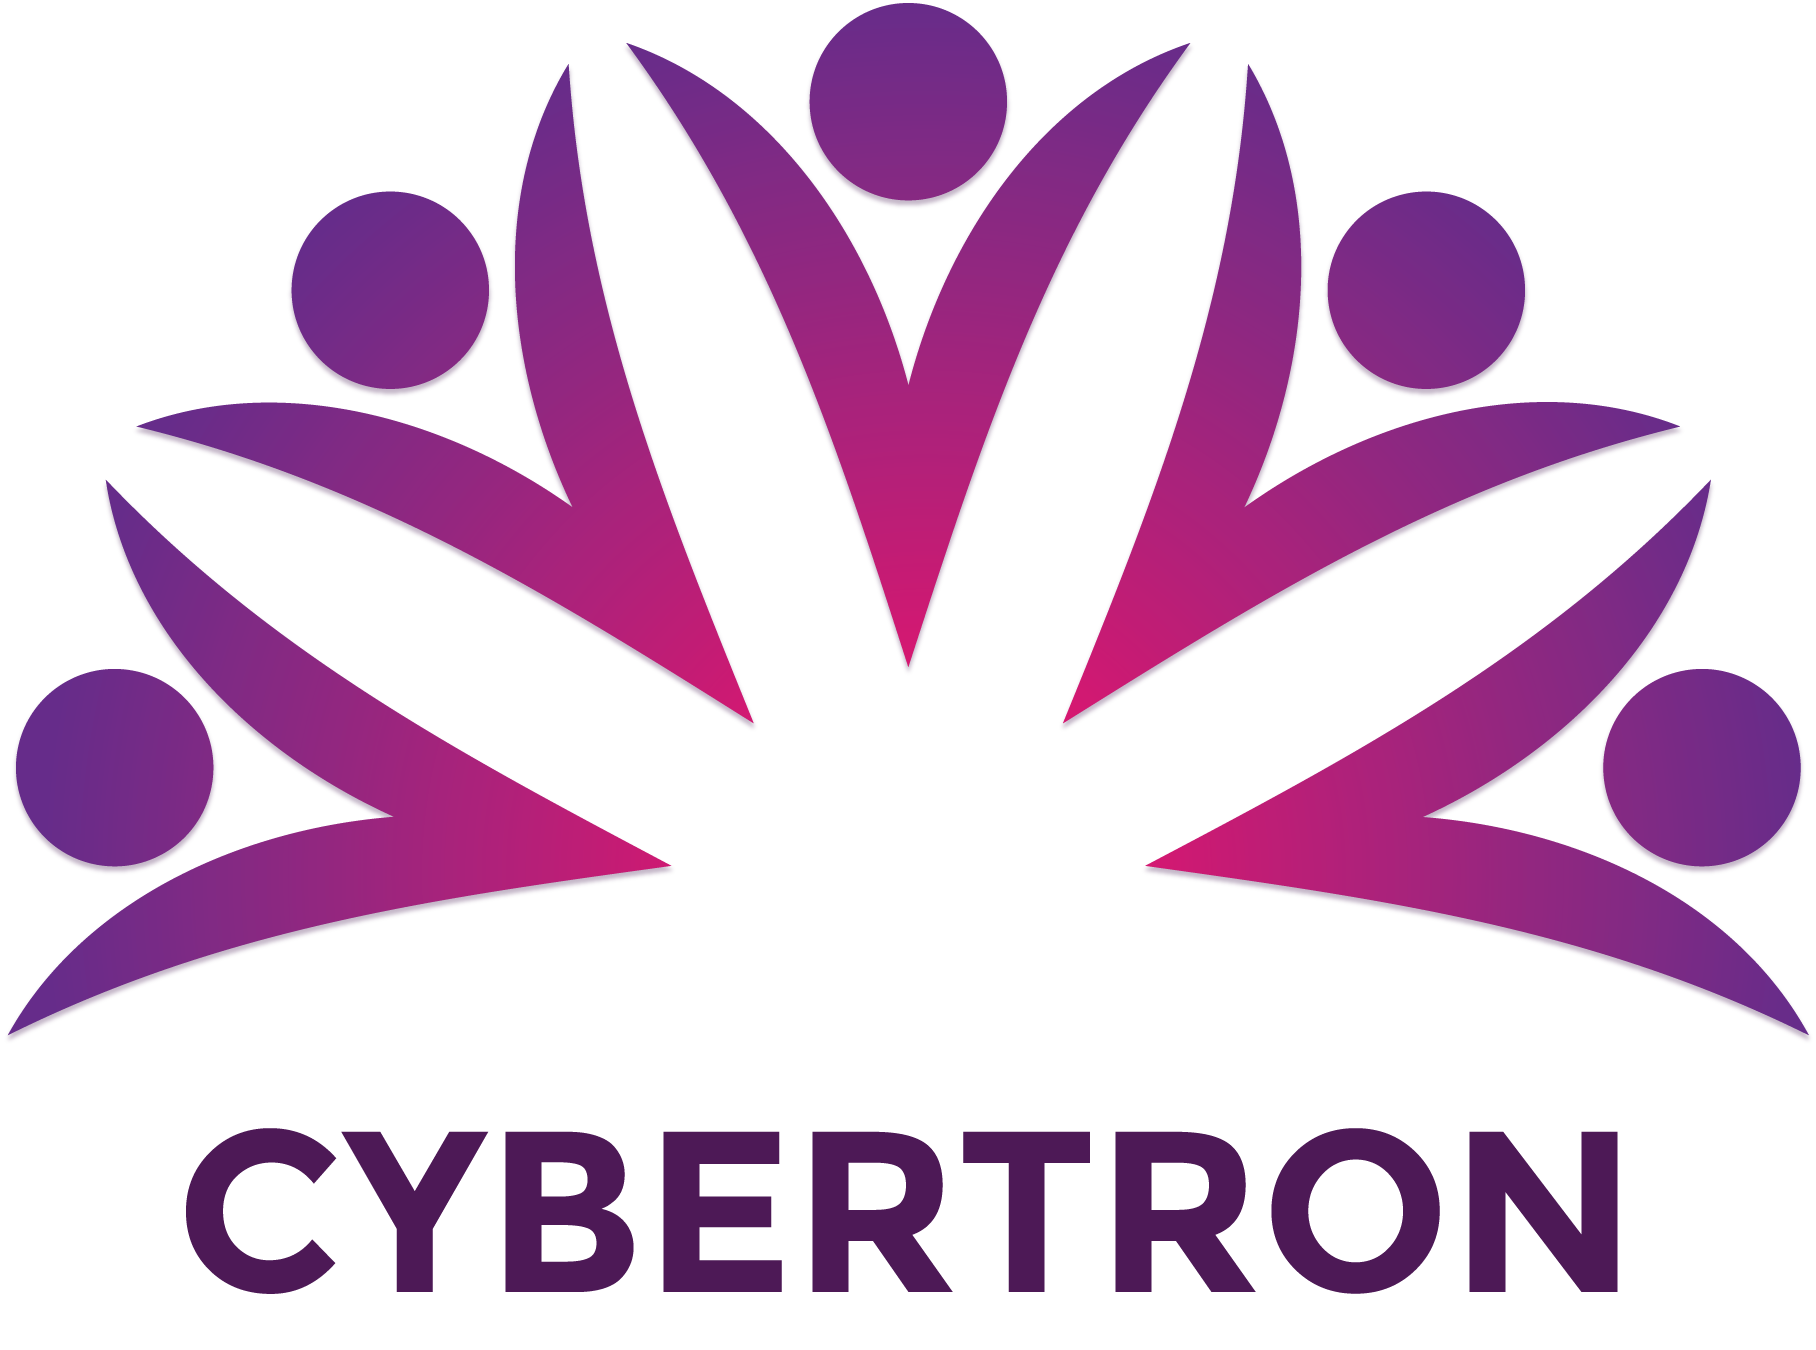 Cybertron logo